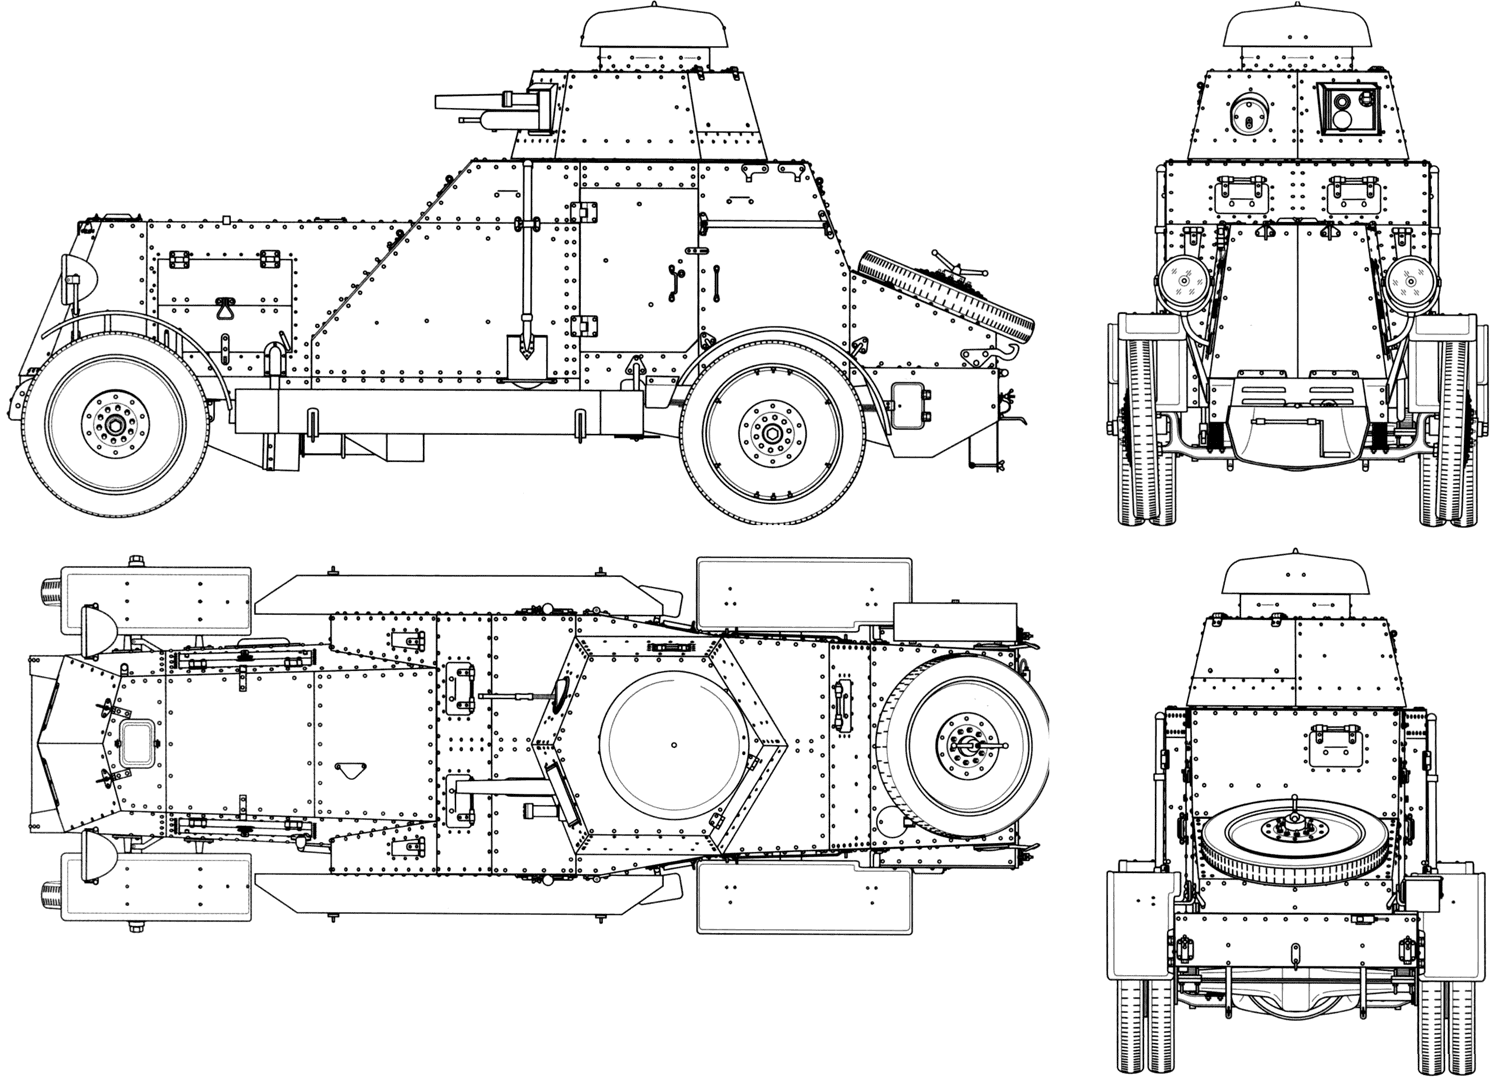 BA-27 blueprint